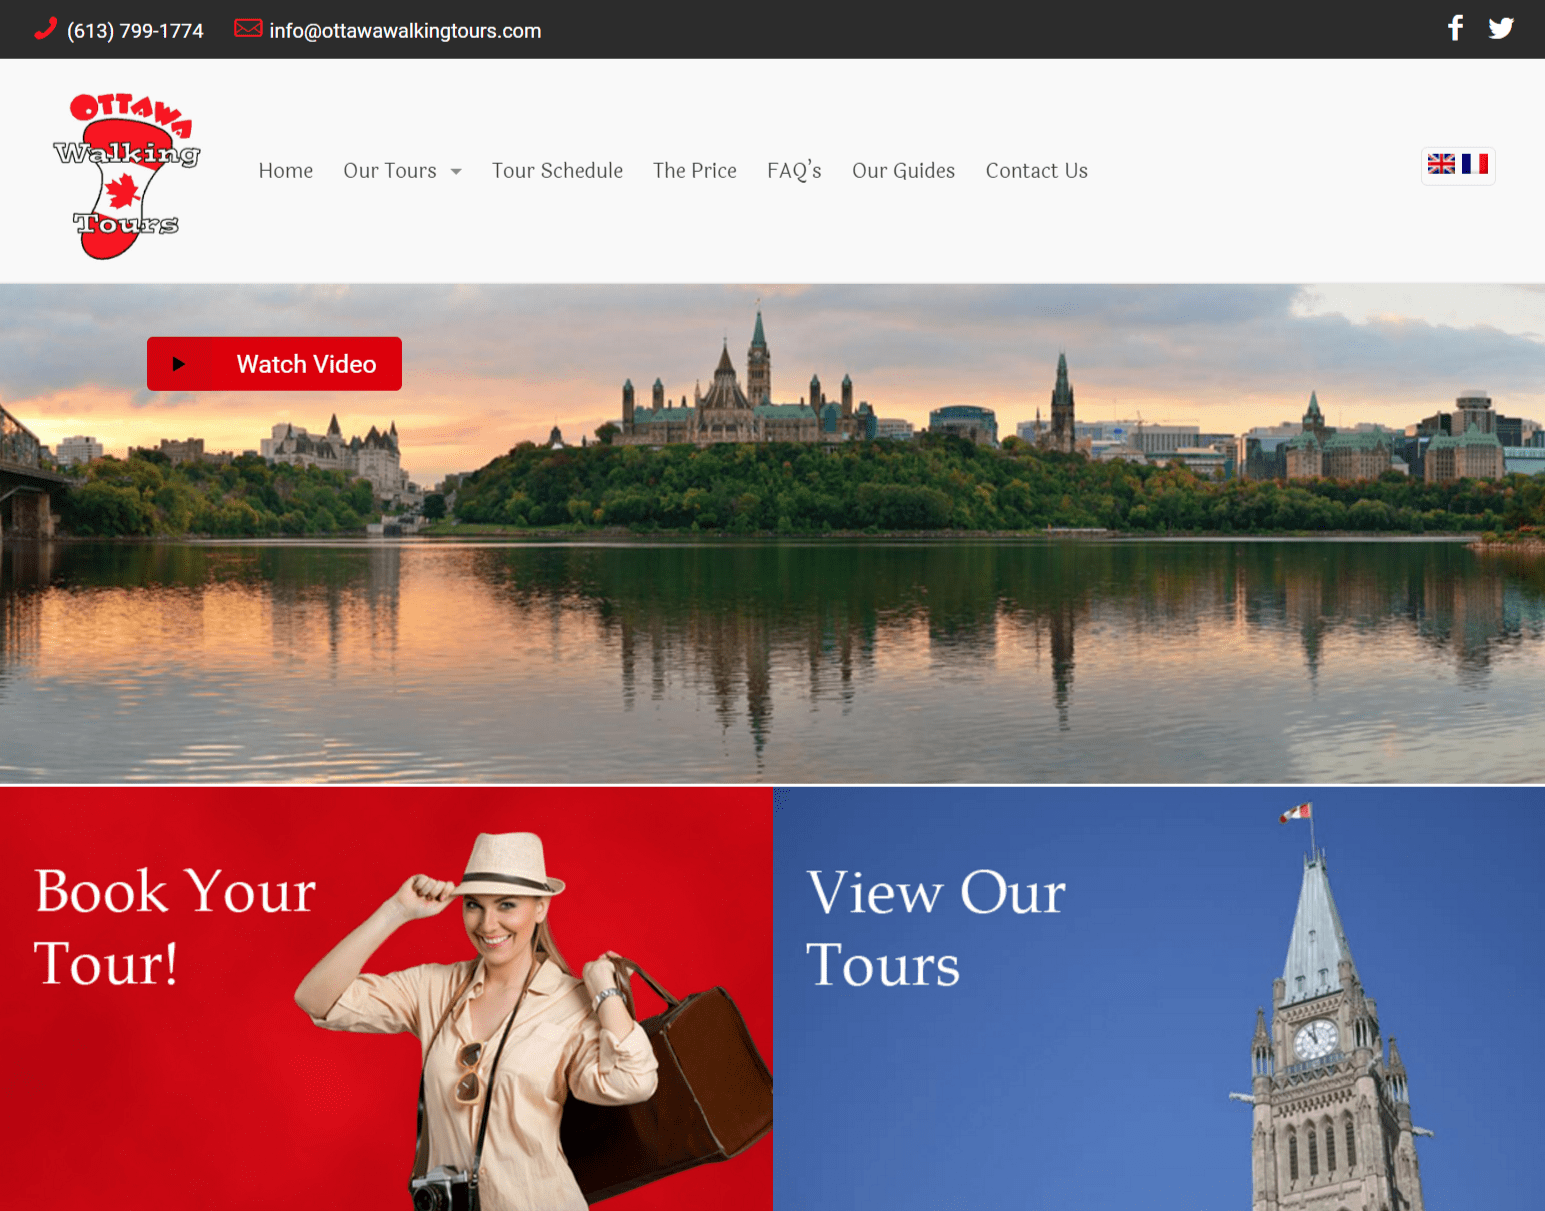 Portfolio Image of Ottawa Walking Tours Web Site